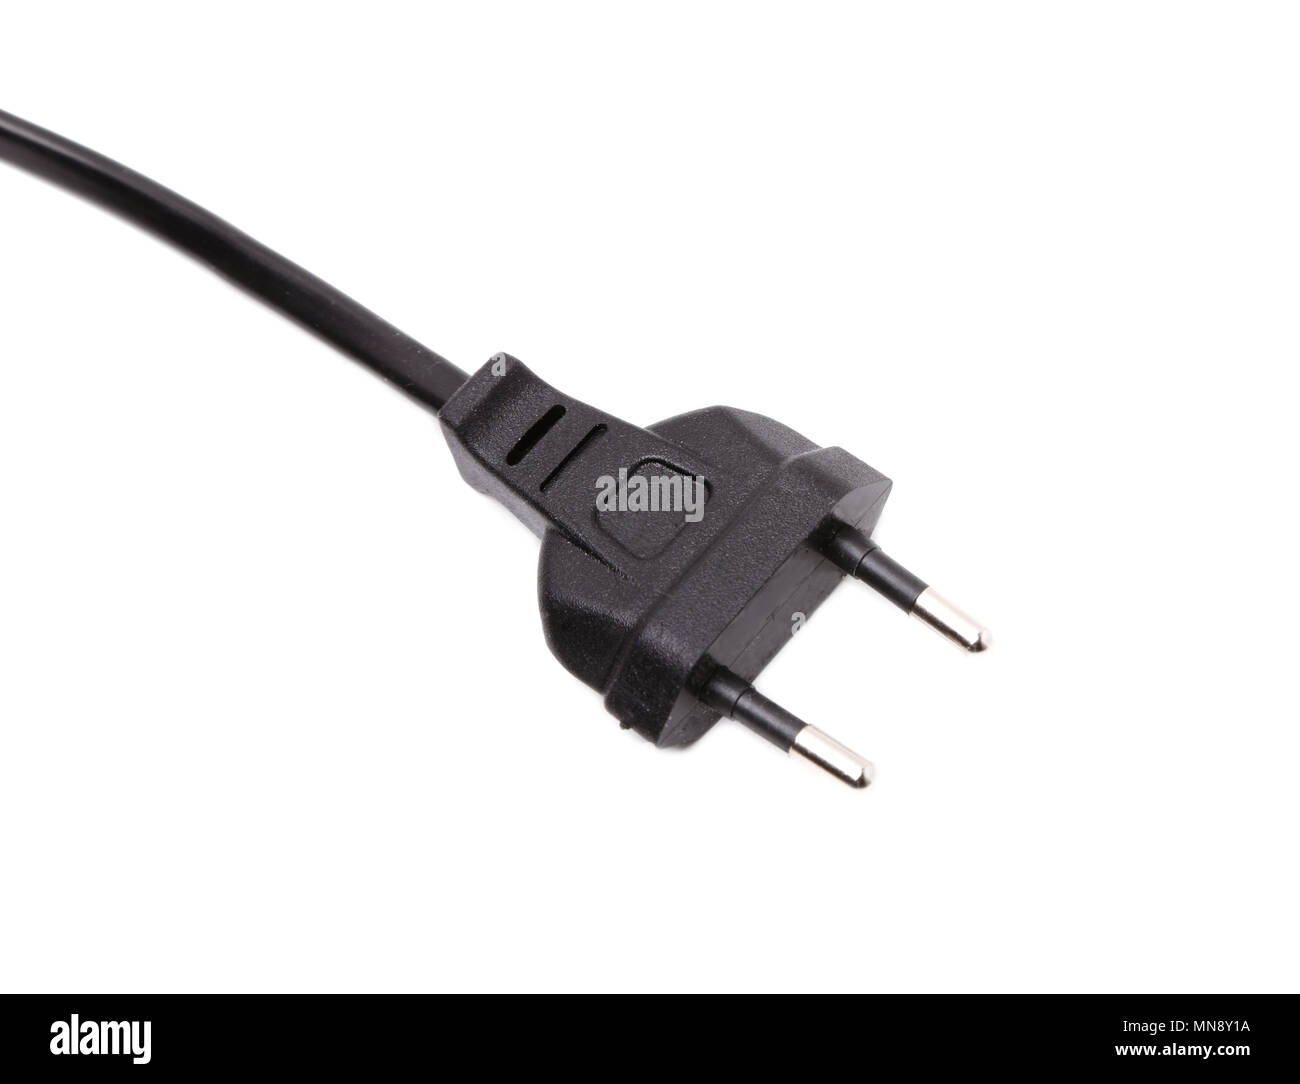 European two pin power plug Stock Photo